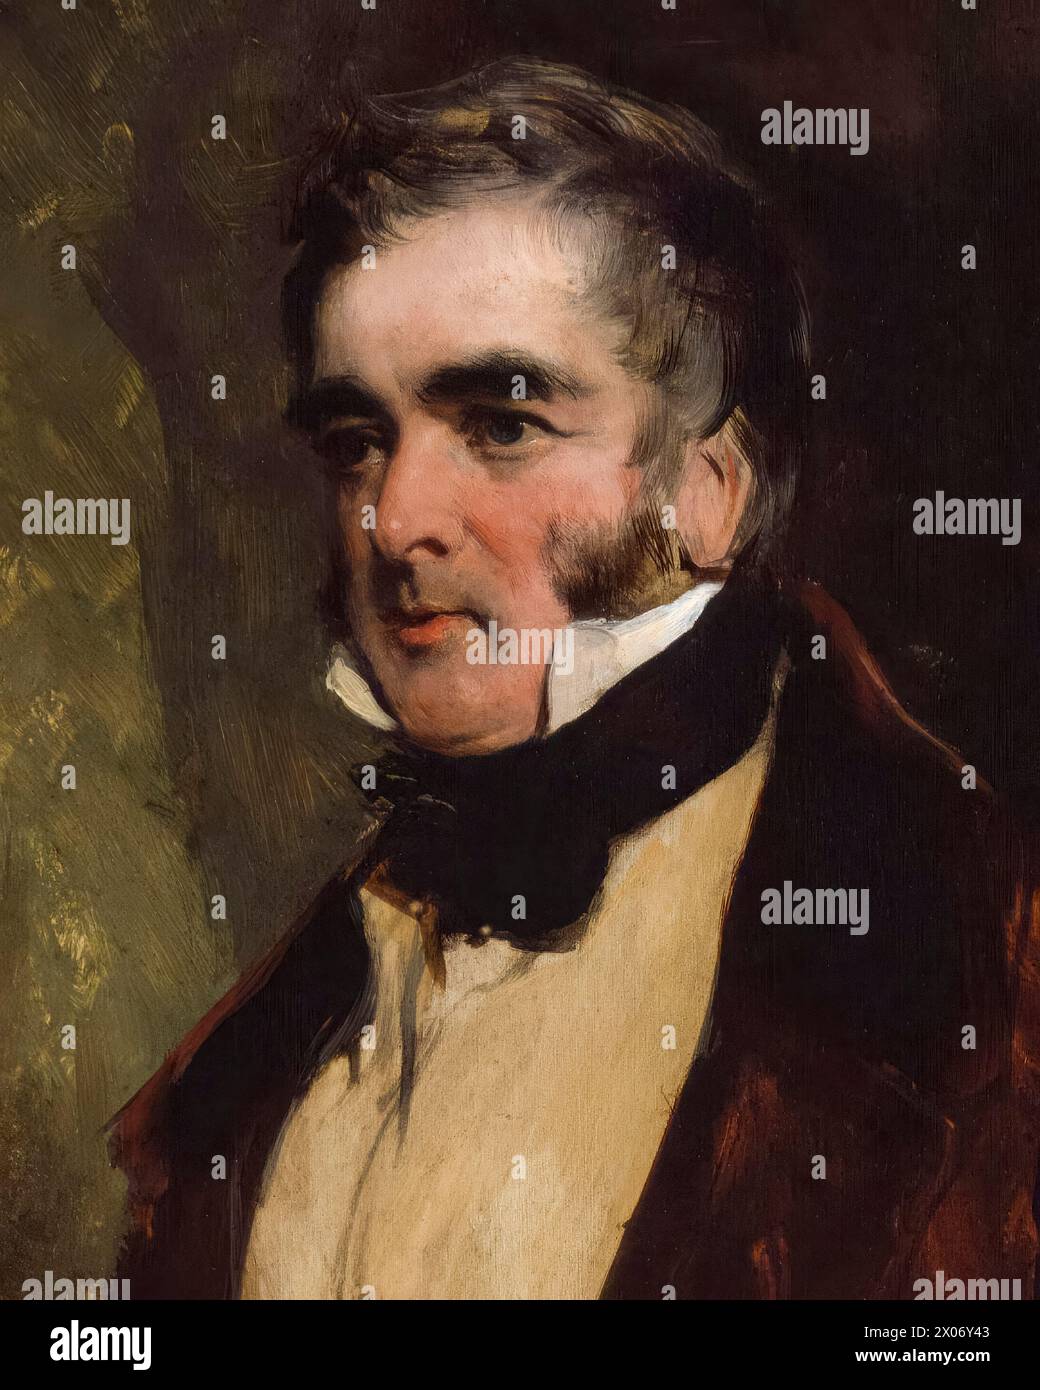 William Lamb, II visconte Melbourne (1779-1848), noto come "Lord Melbourne", primo ministro del Regno Unito luglio-novembre 1834 e 1835-1841, ritratto a olio su tavola di Sir Edwin Henry Landseer, 1836 Foto Stock